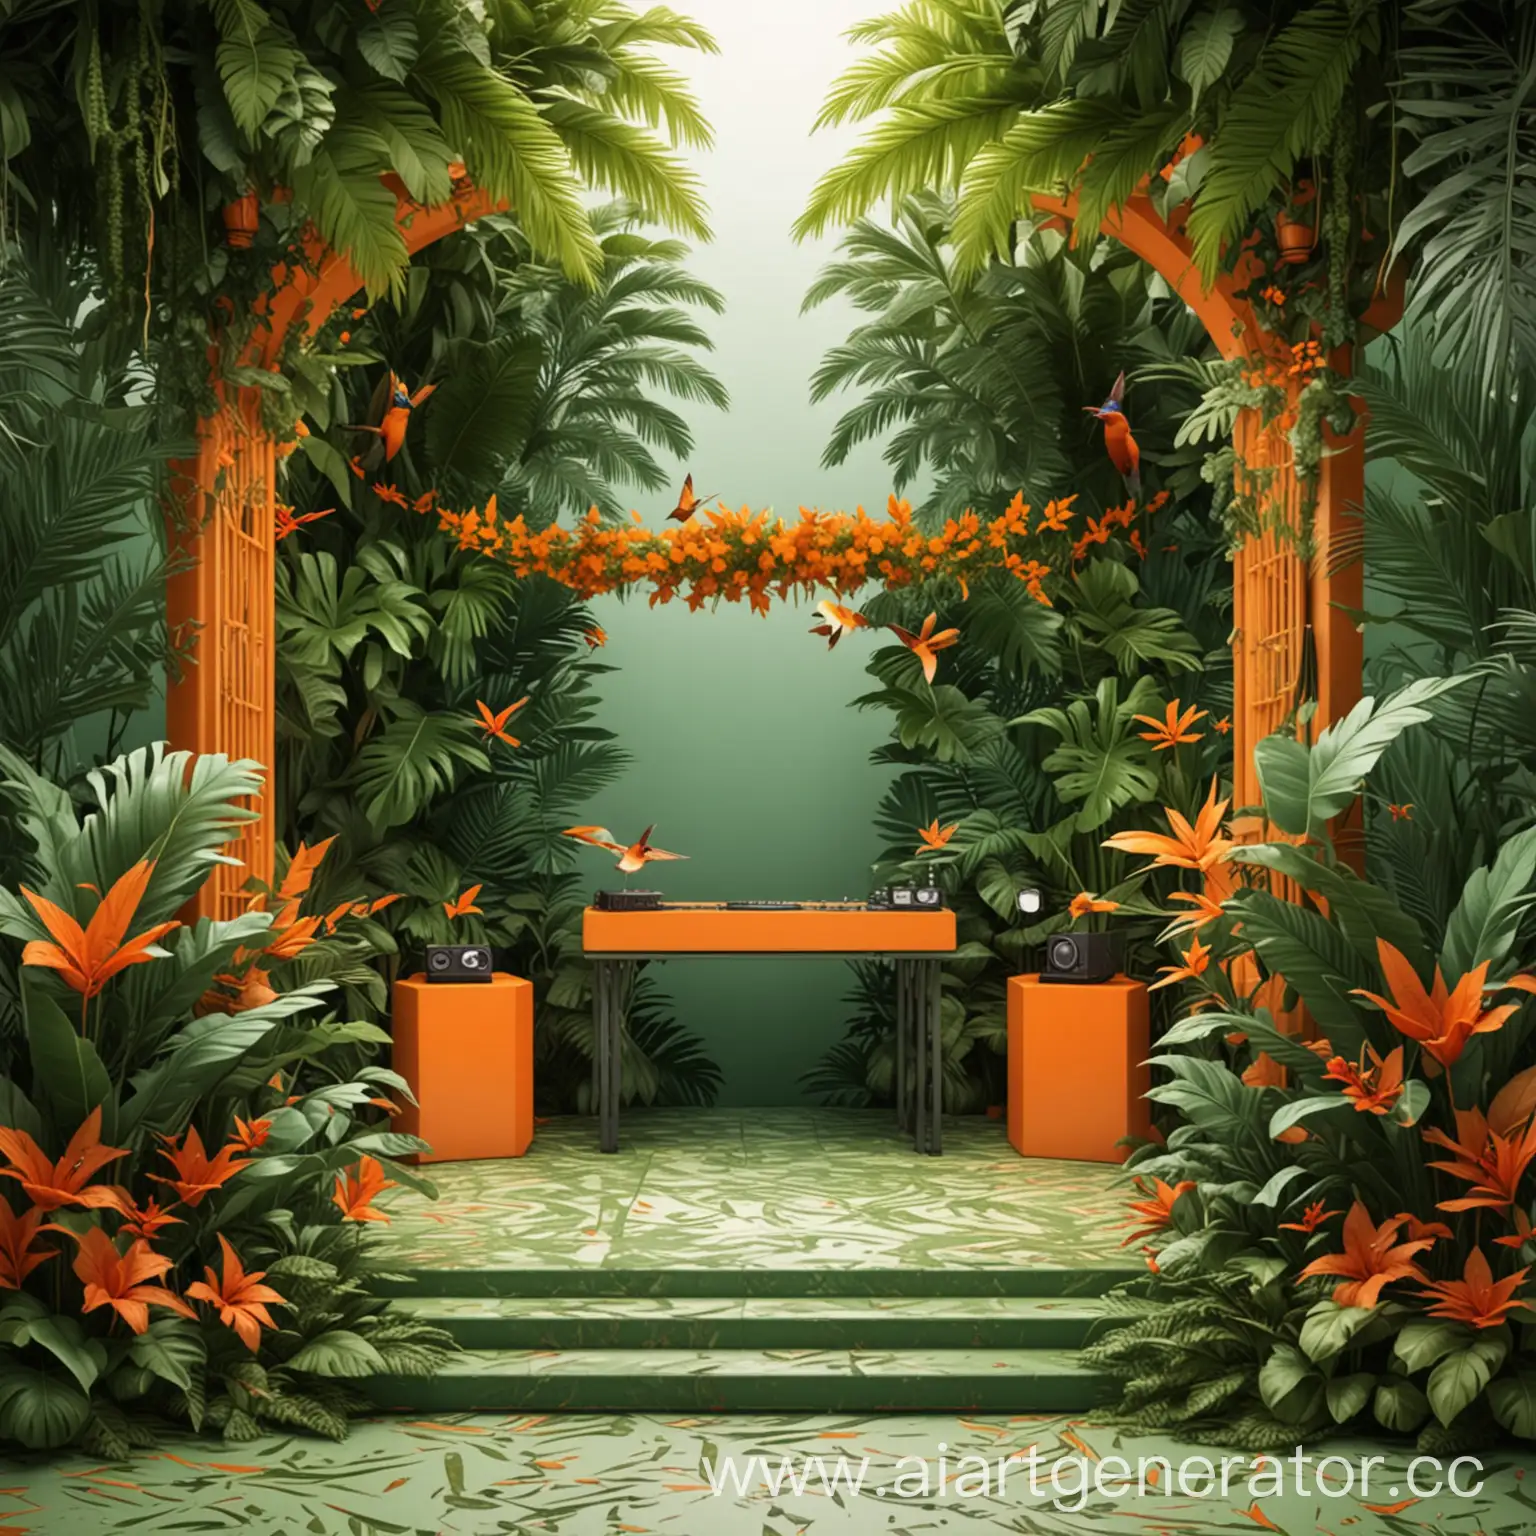 веранда с диджей пультом, вокруг тропические листья, посередине птичка колибри, 3D, минимализм, оранжевый и зеленый цвета